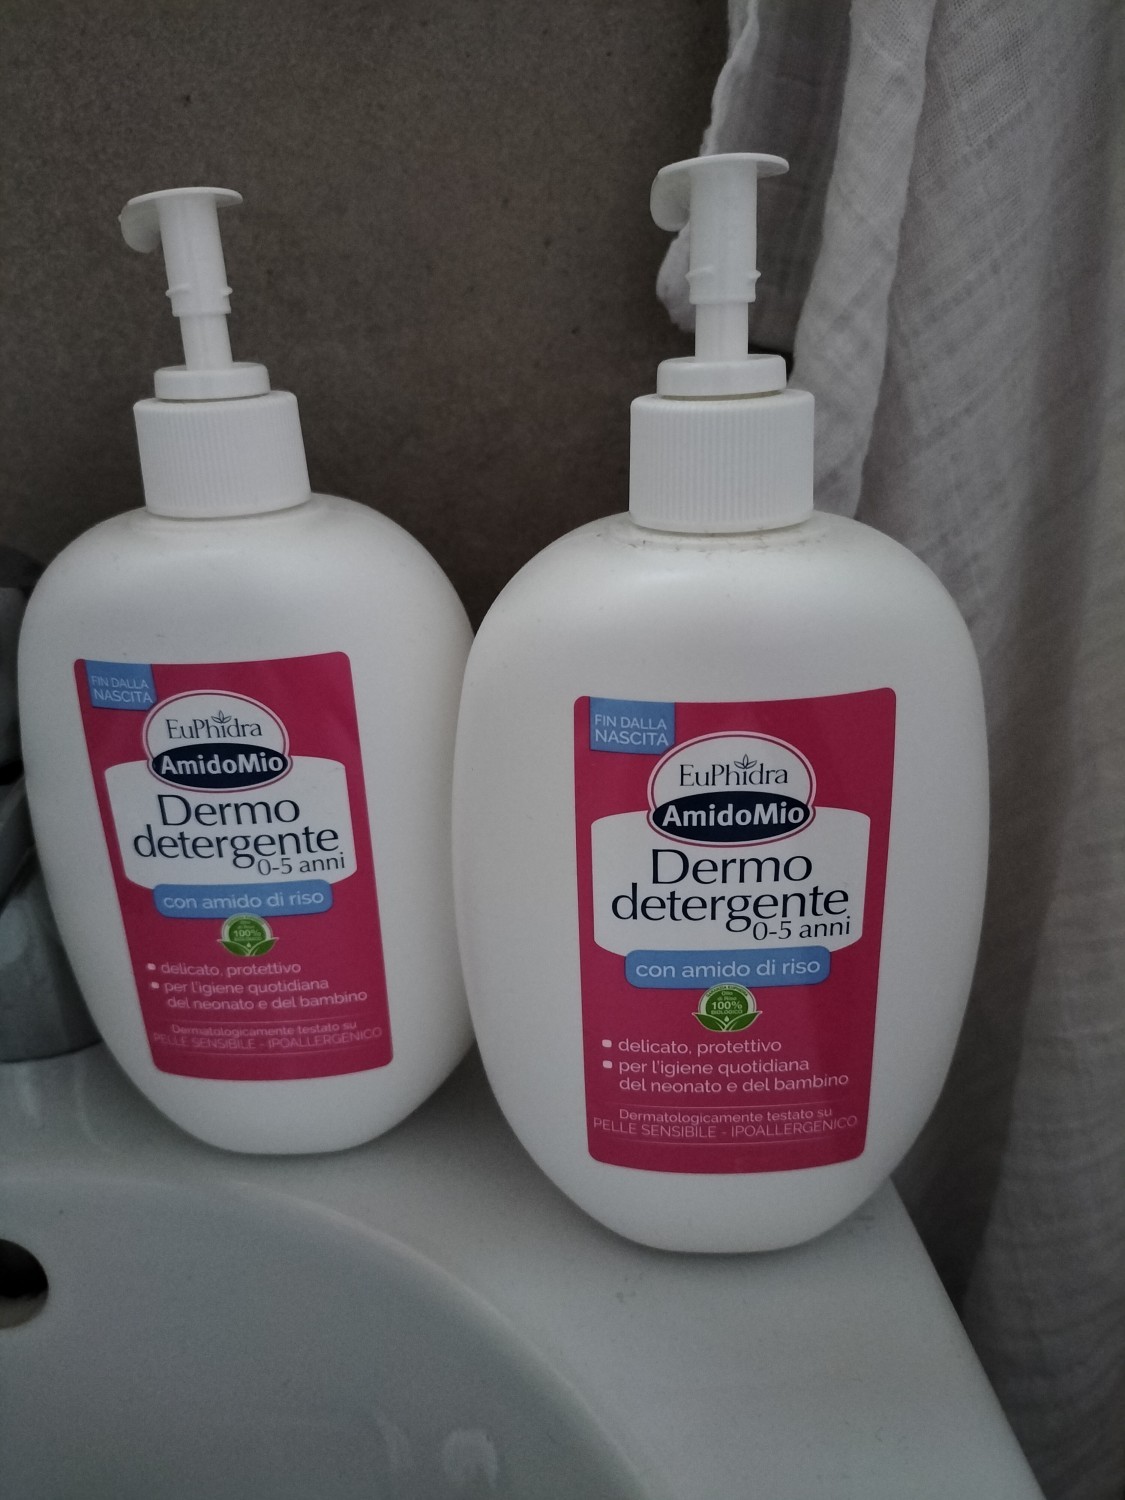 Dermo detergente